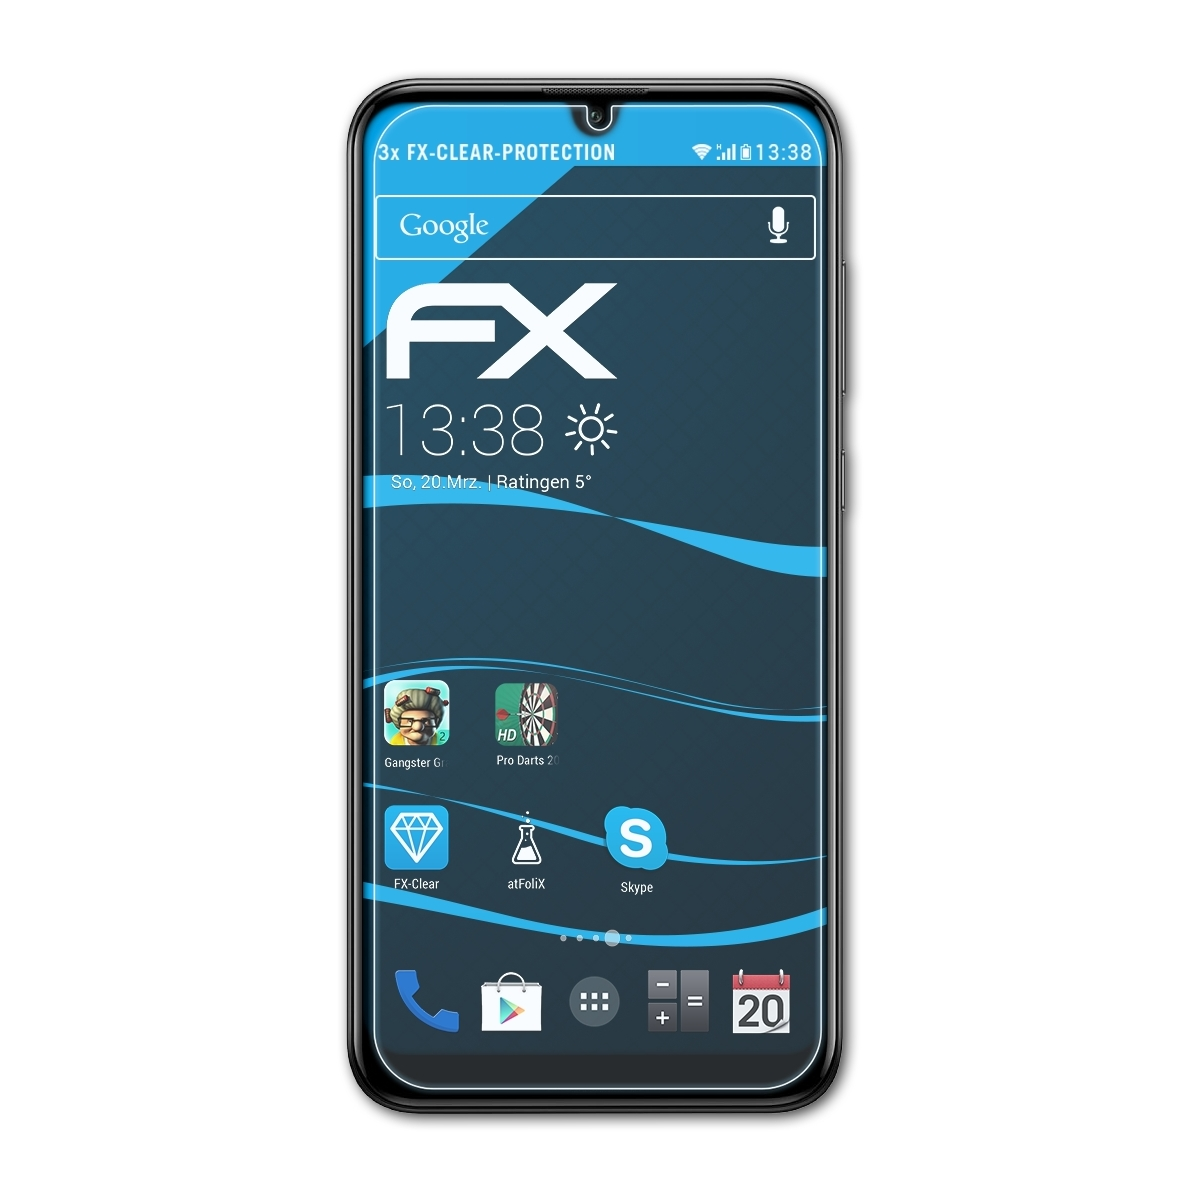 Y7 ATFOLIX FX-Clear Huawei 2019) 3x Displayschutz(für